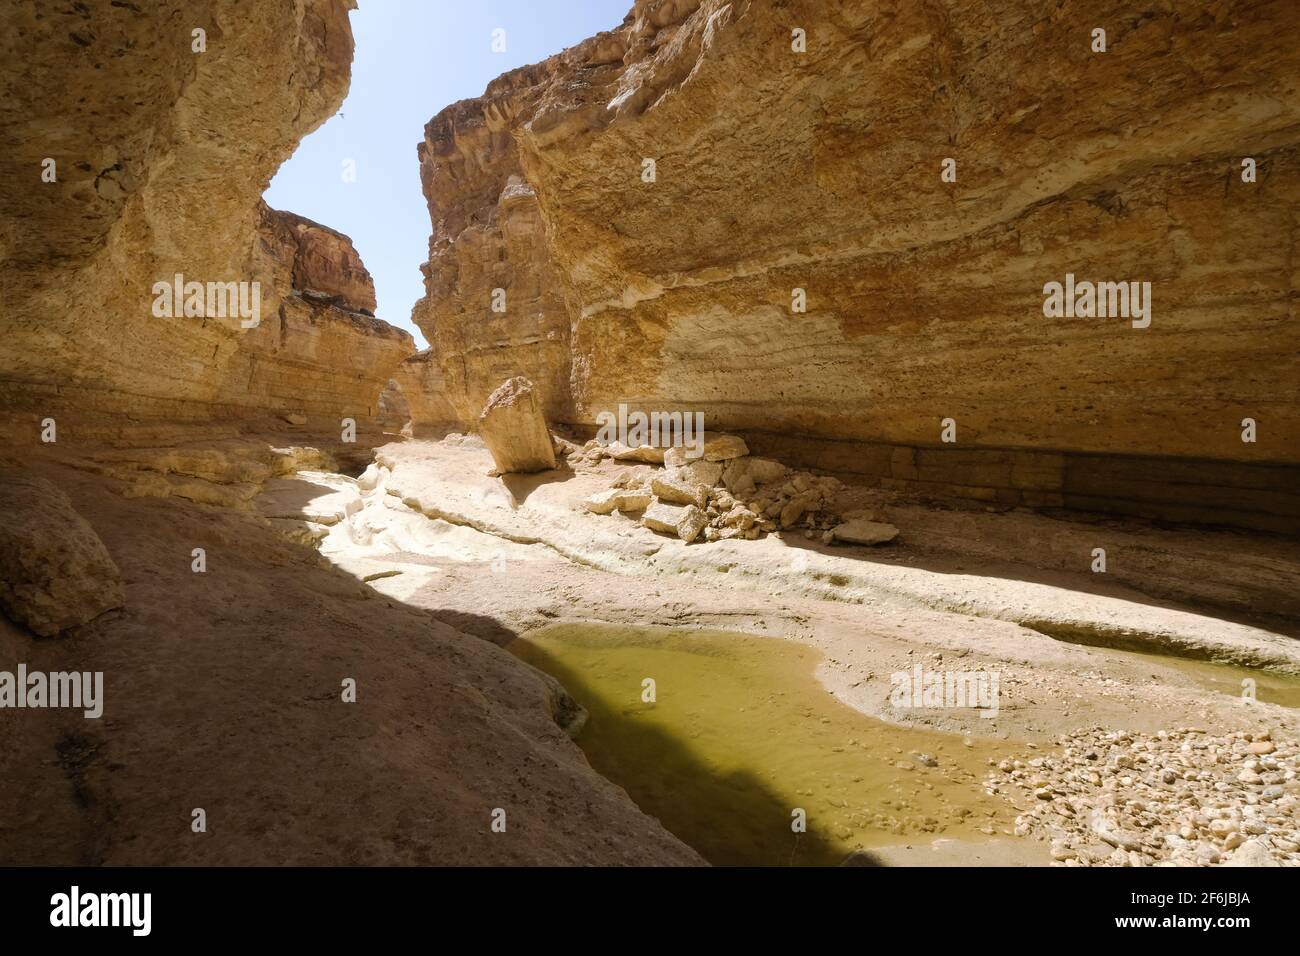 Tamerza canyon,Tozeur,Tunisia Stock Photo